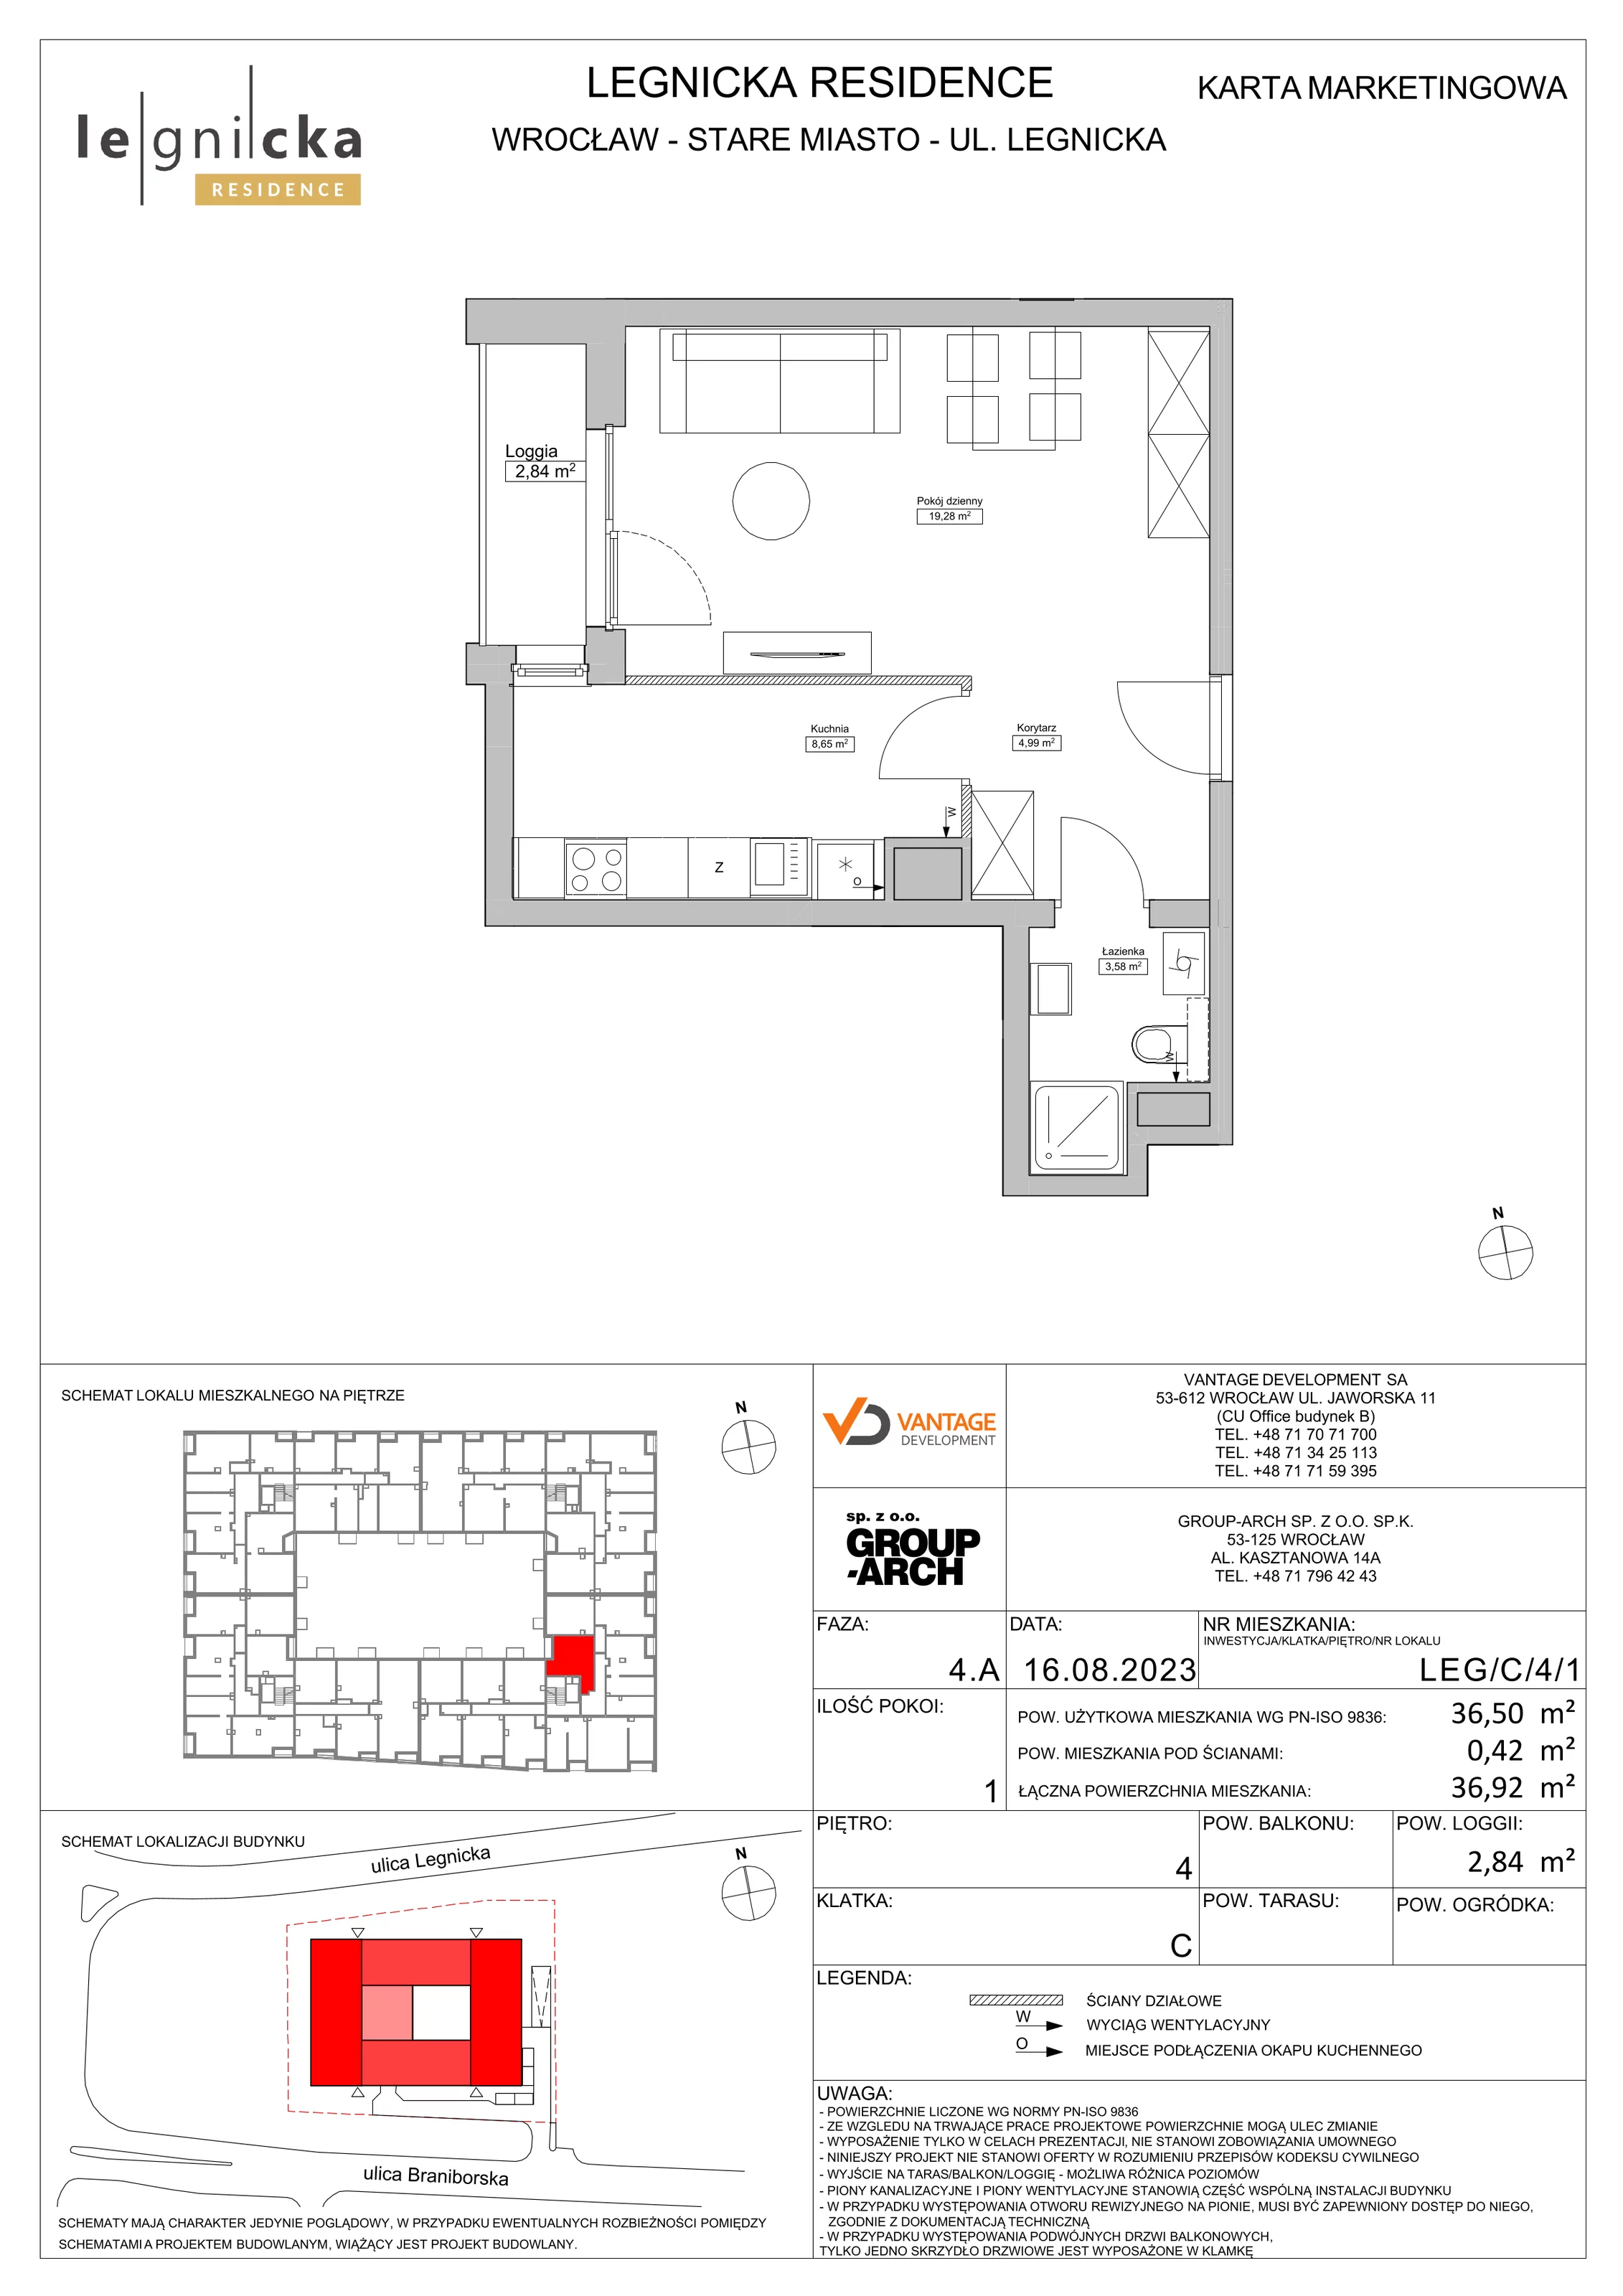 Apartament inwestycyjny 36,50 m², piętro 4, oferta nr LEG/C/4/1, Legnicka Residence, Wrocław, Szczepin, ul. Legnicka 36